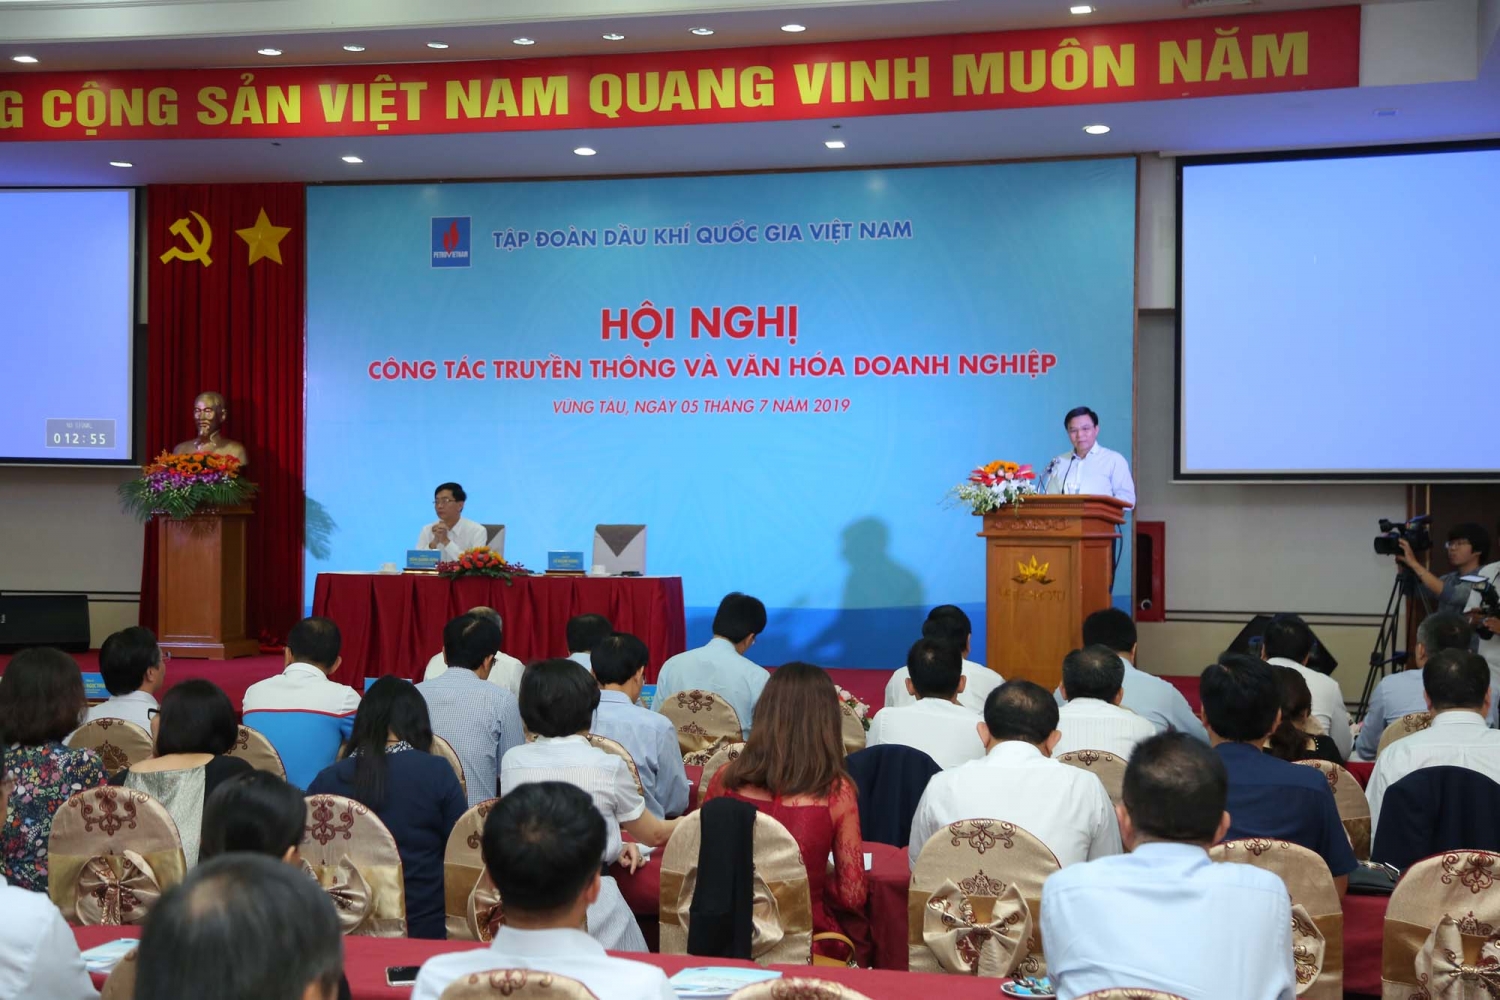 Tập đoàn Dầu khí Quốc gia Việt Nam: Truyền thông góp phần nâng cao vị thế, vai trò của doanh nghiệp Nhà nước